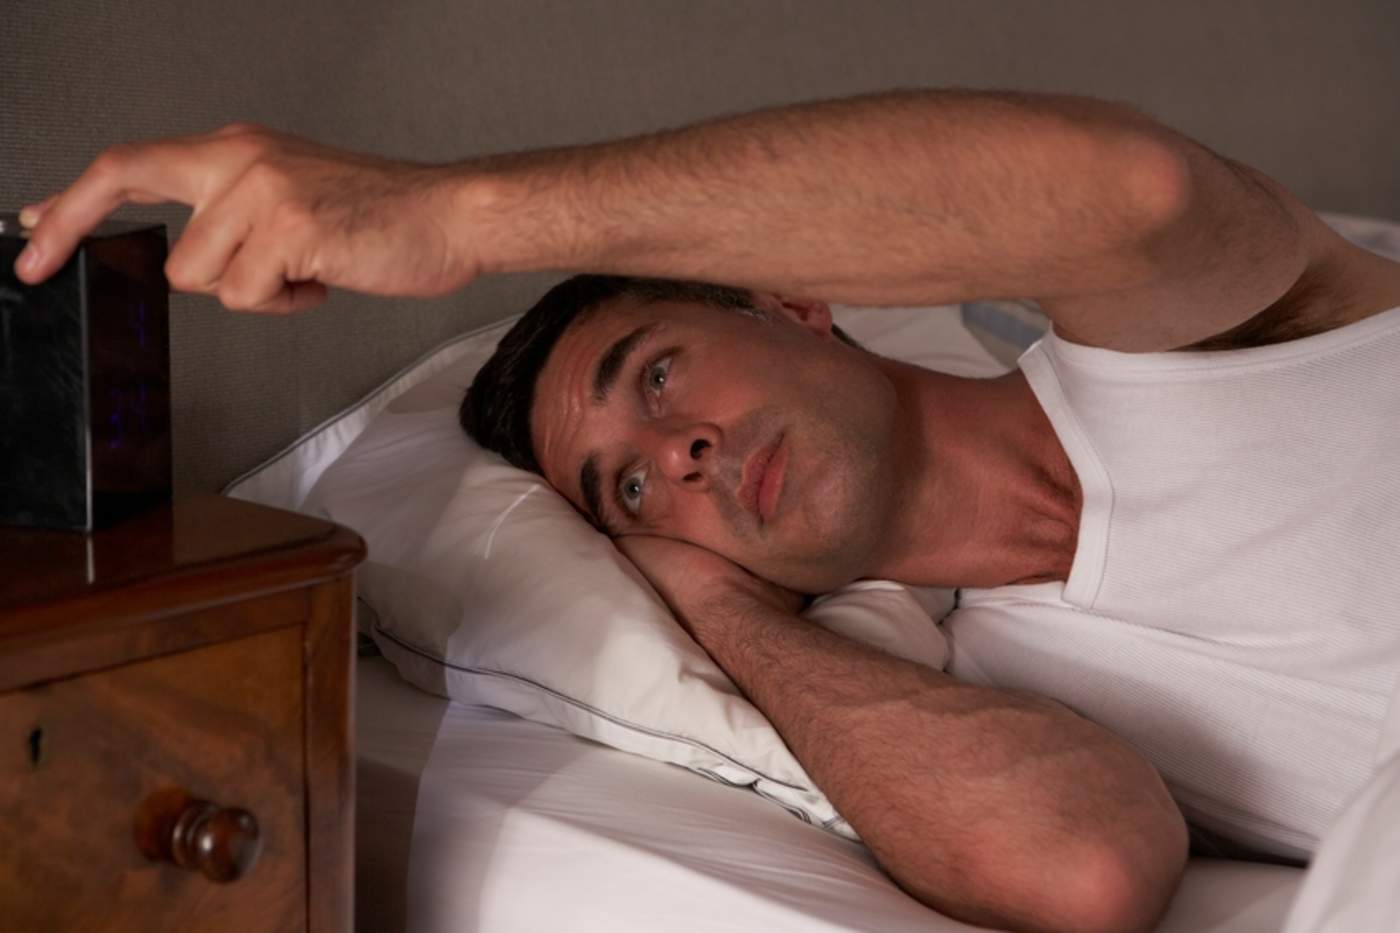 Dormir las horas adecuadas es tan importante como llevar una dieta equilibrada o efectuar actividad física. (ARCHIVO)